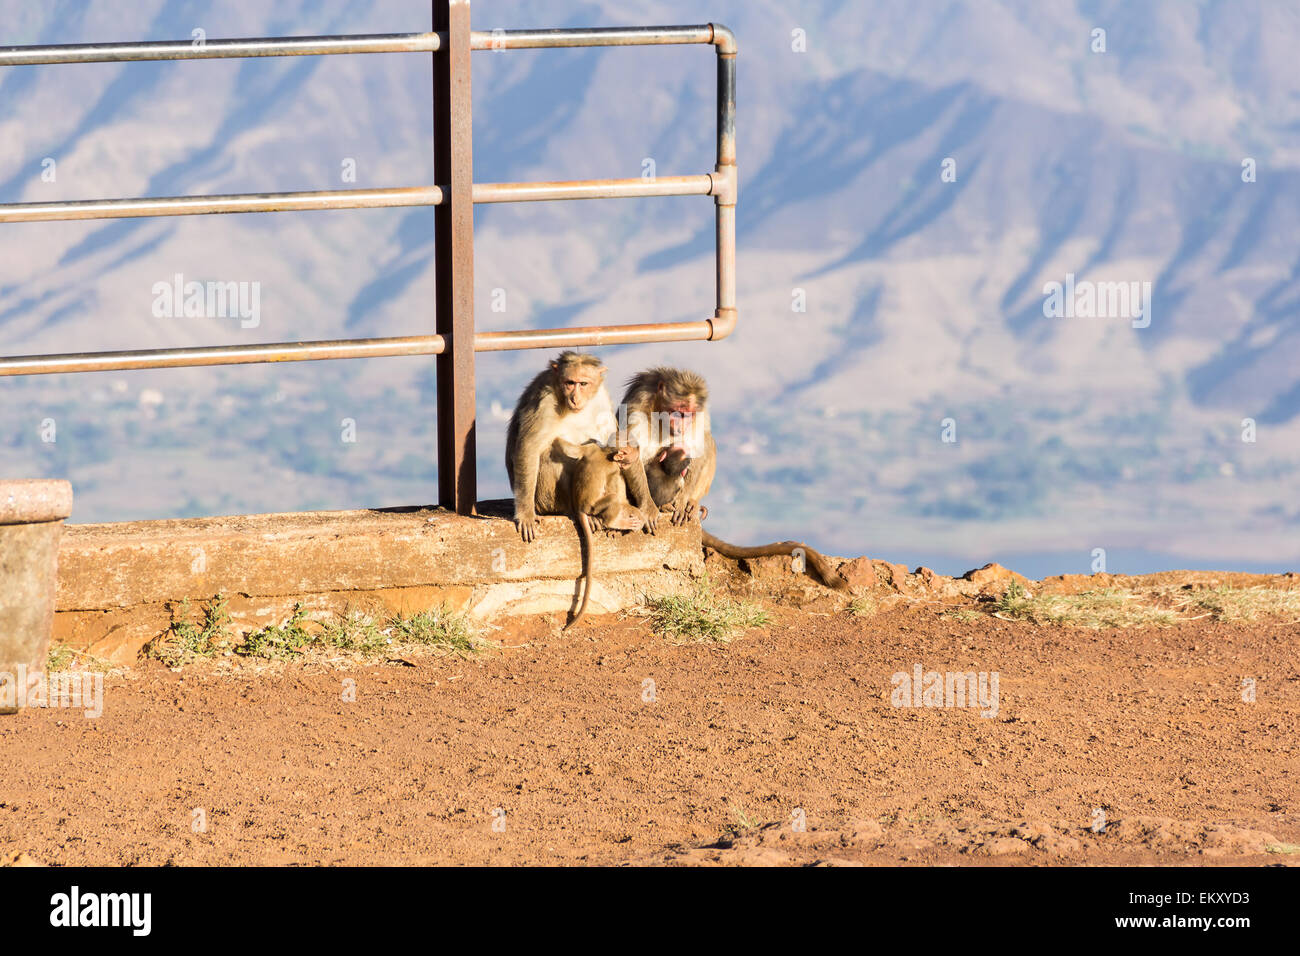 Monkeys with infants(baby monkeys). Stock Photo